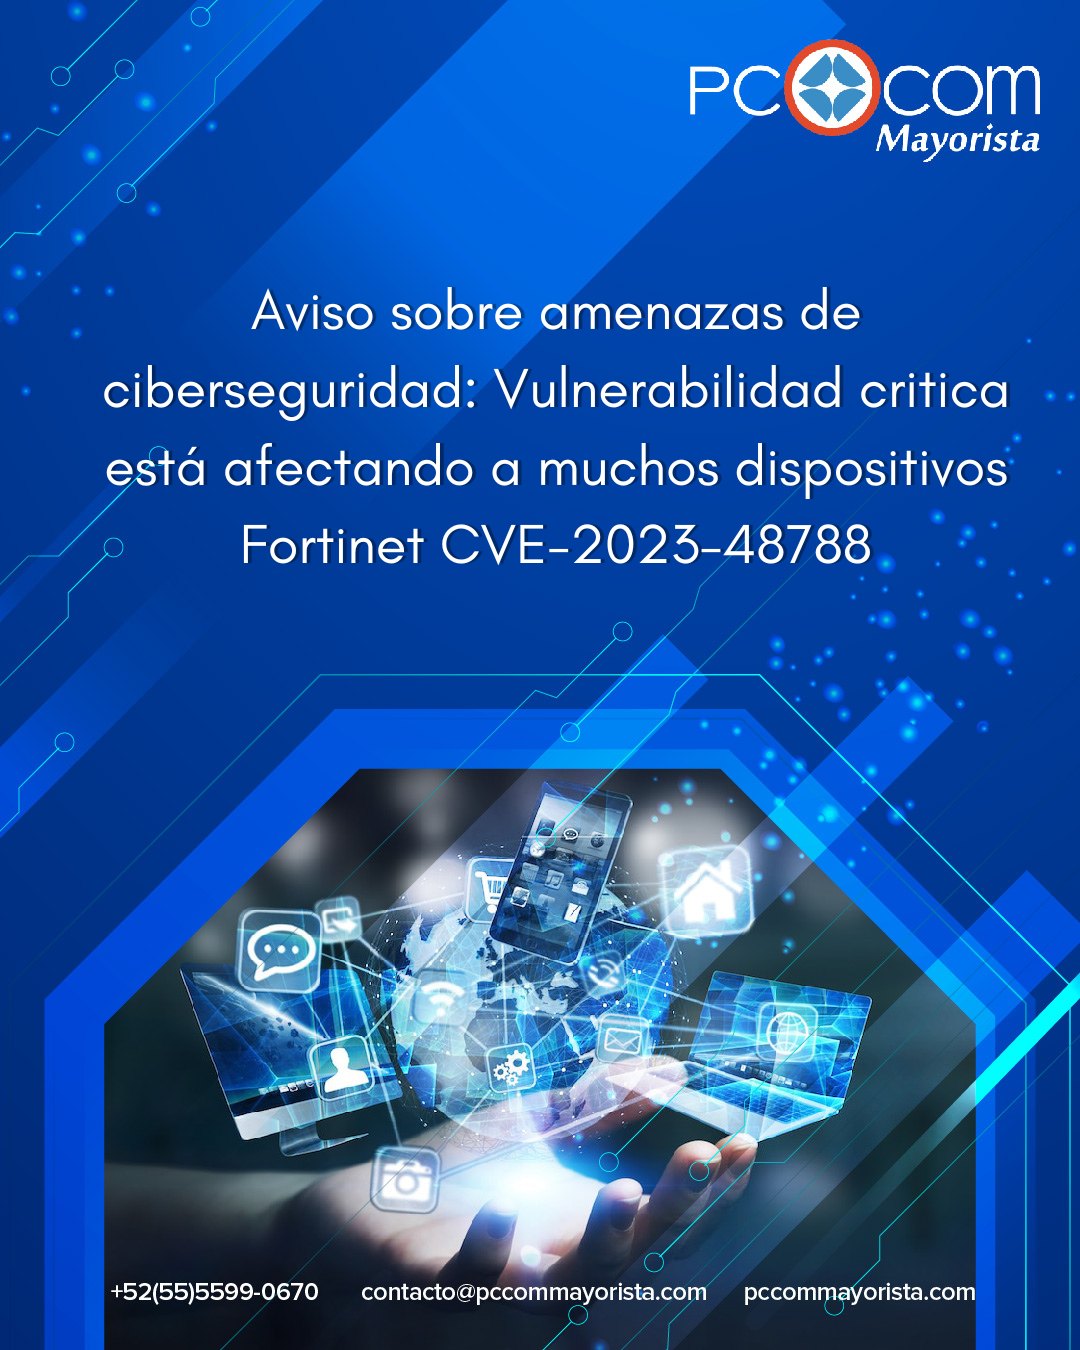 Aviso sobre amenazas de ciberseguridad: Vulnerabilidad critica está afectando a muchos dispositivos Fortinet CVE-2023-48788